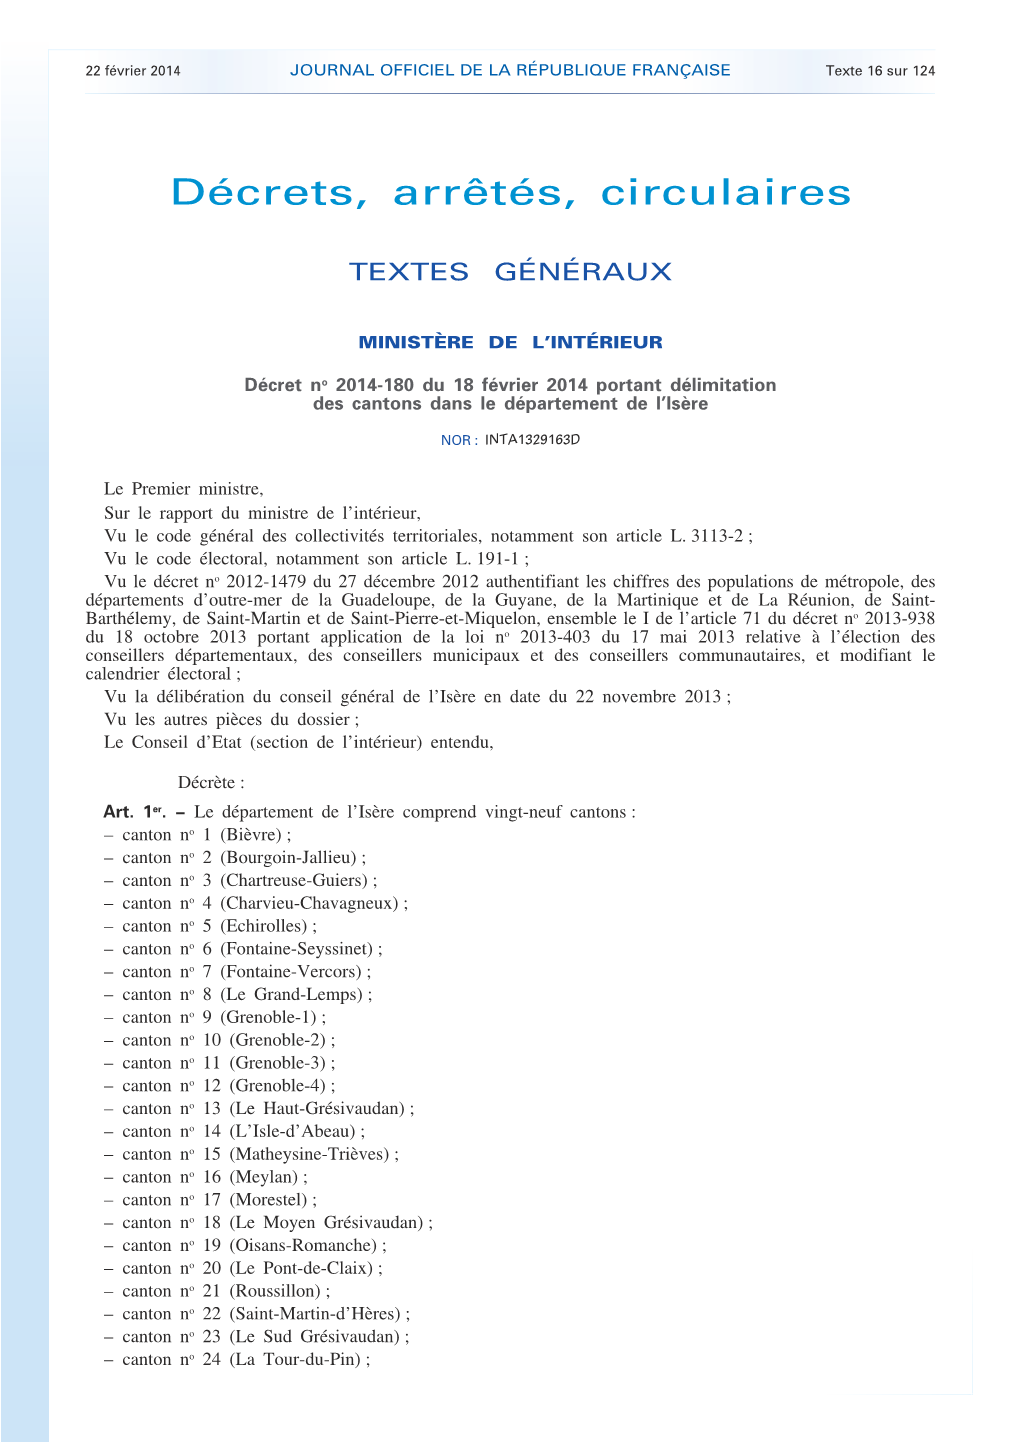 JOURNAL OFFICIEL DE LA RÉPUBLIQUE FRANÇAISE Texte 16 Sur 124